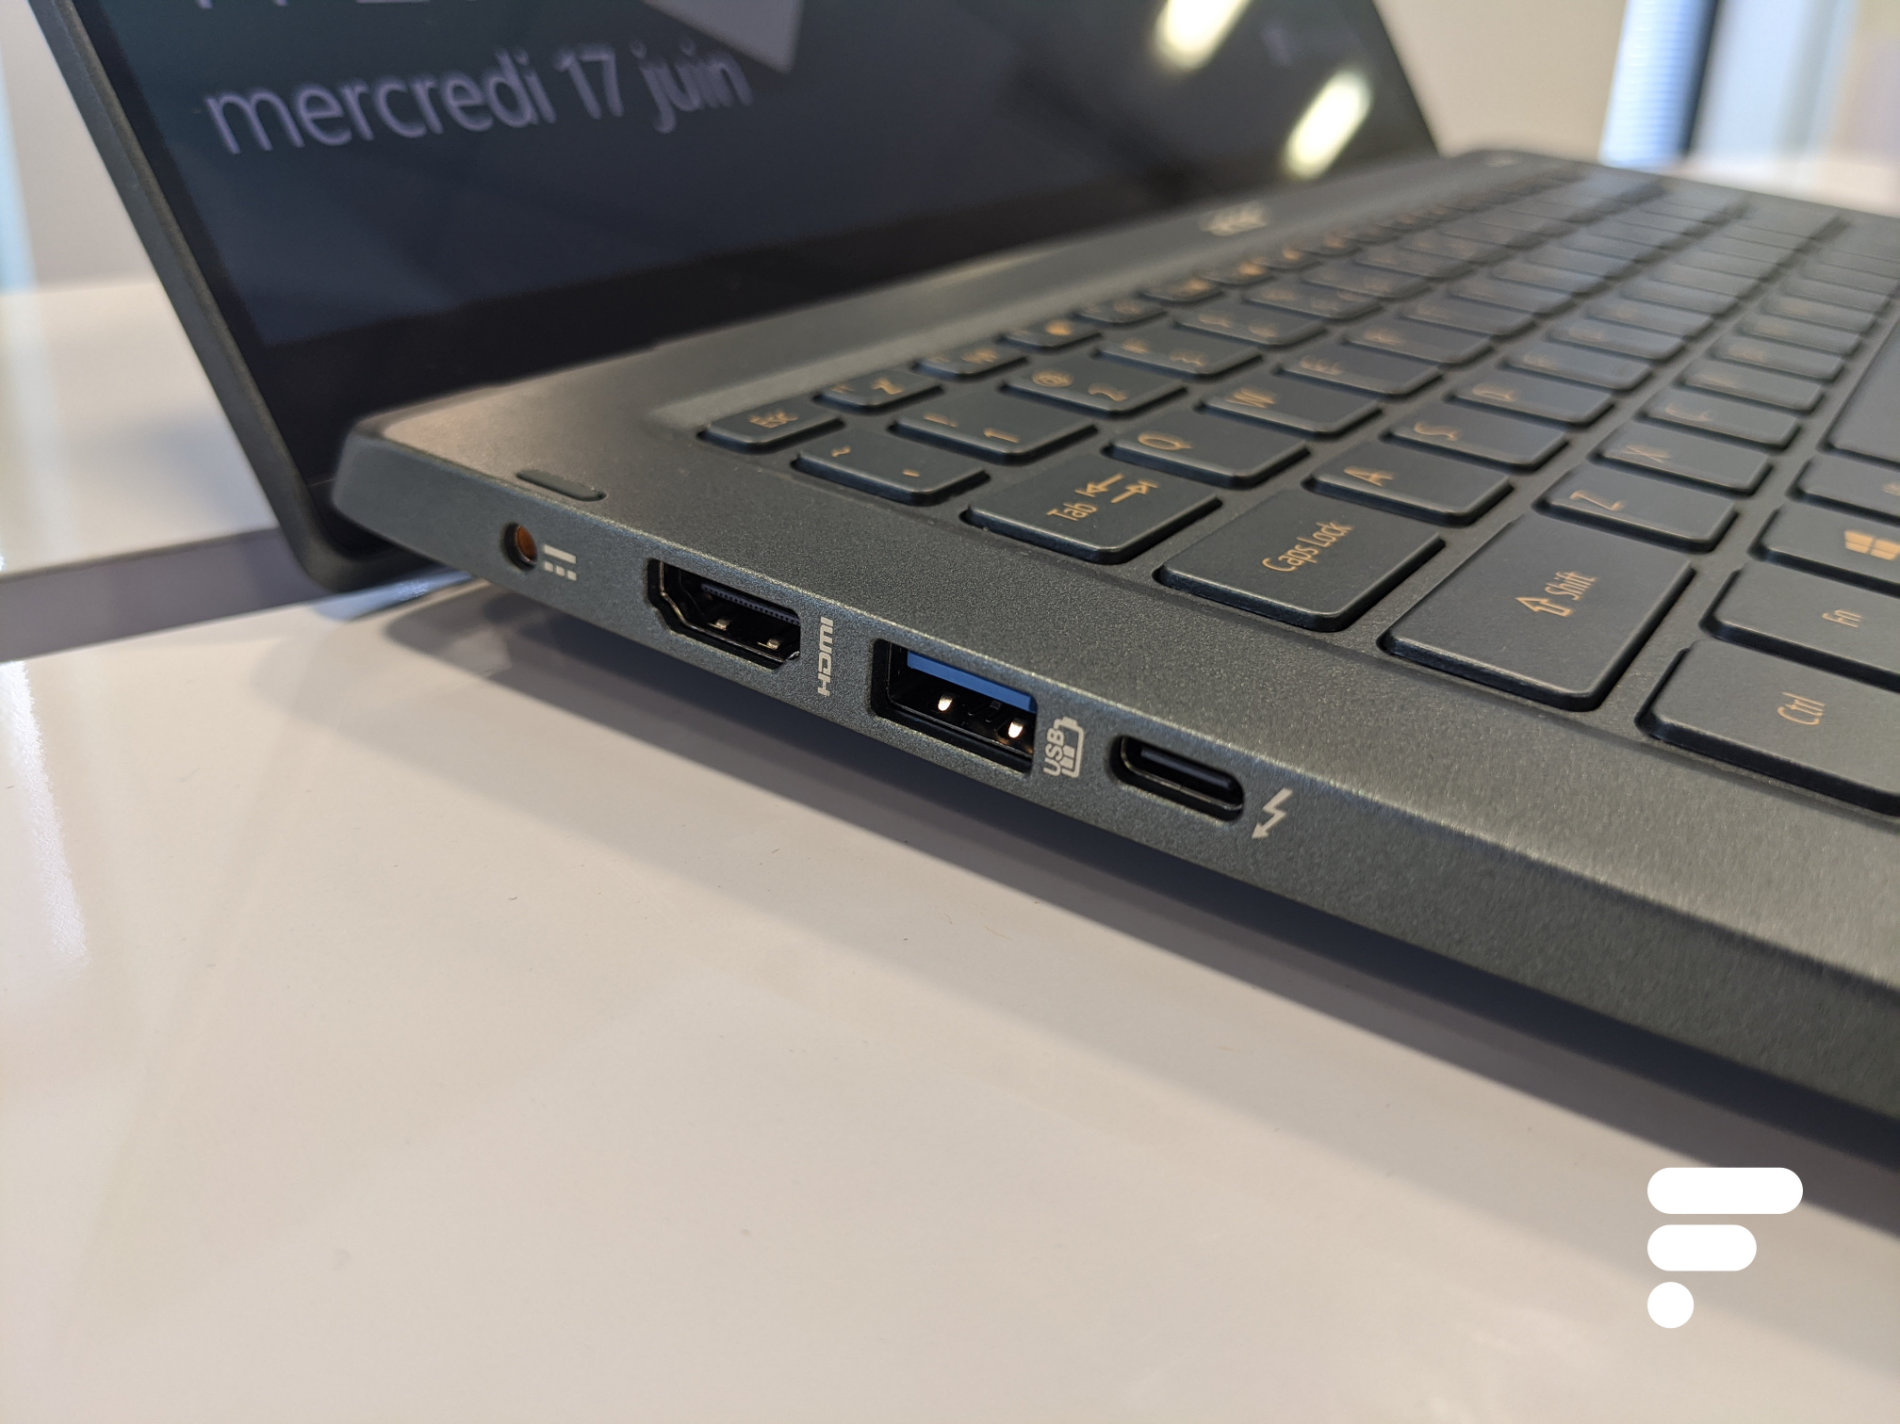 Acer Swift 5 Prise en main 2020 (12)